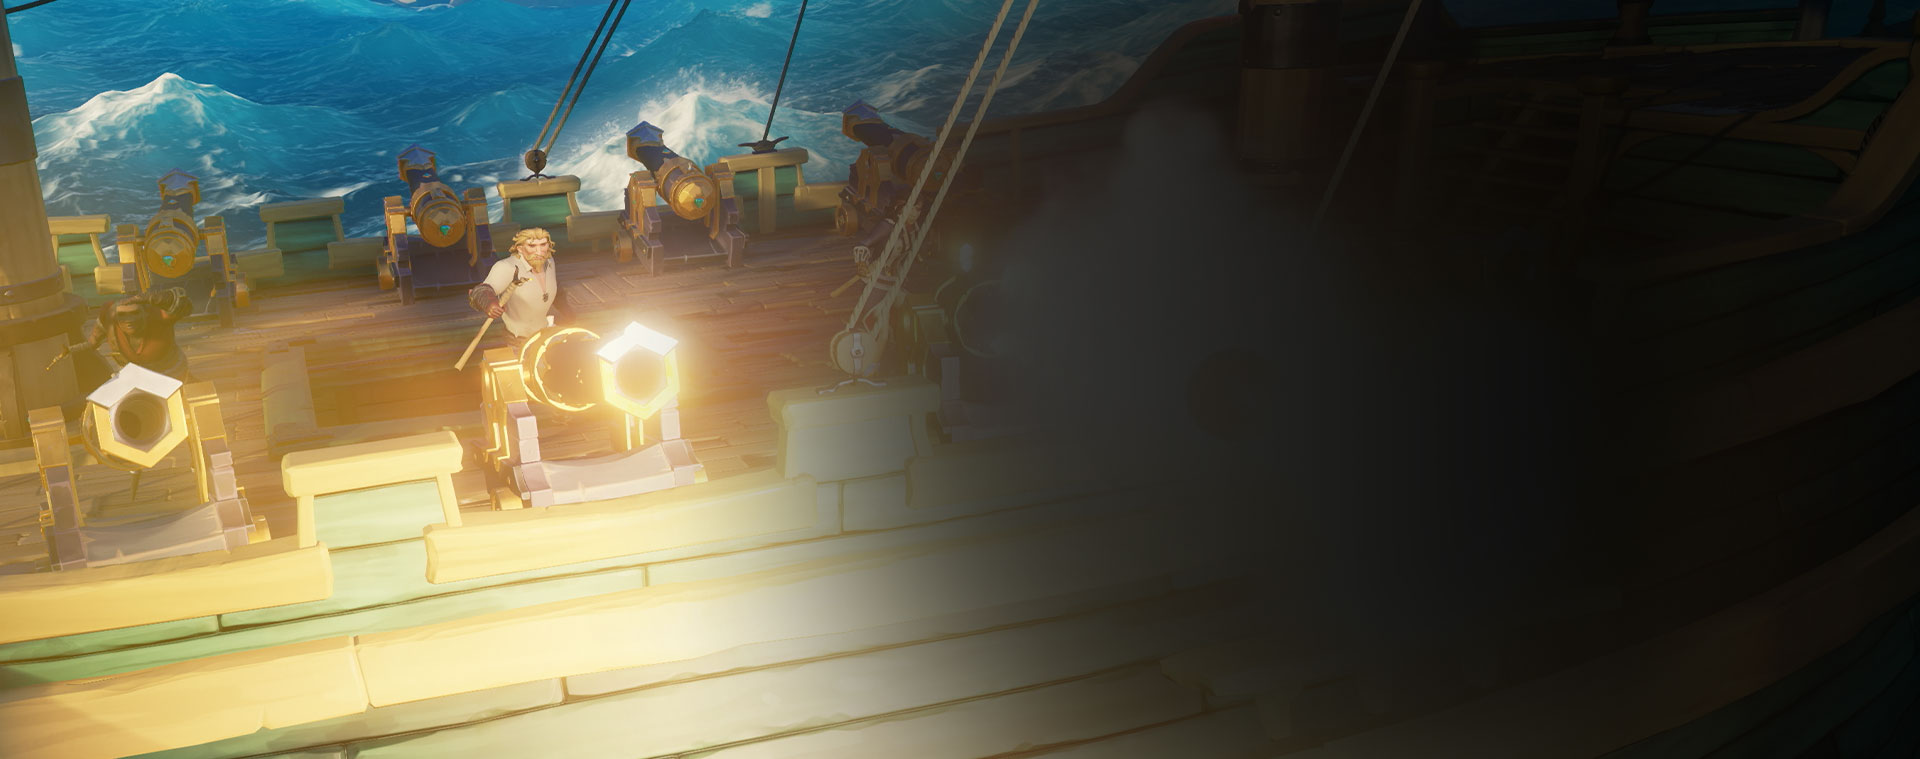 Sea of Thieves 中的角色從船上發射大炮